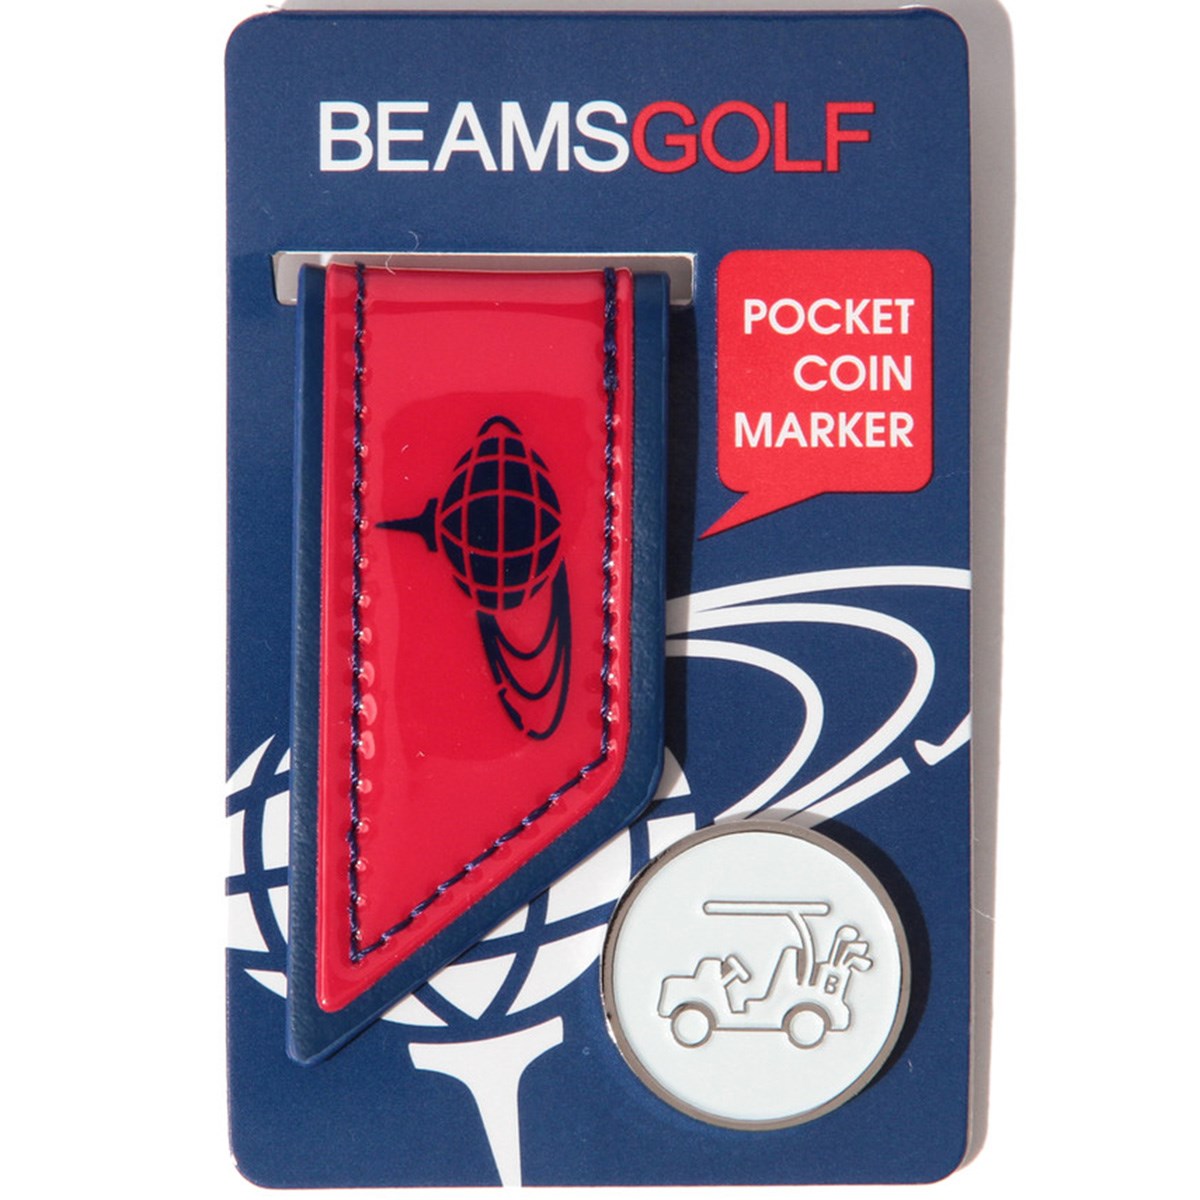 BEAMS GOLF II ポケットコインマーカー(マーカー)